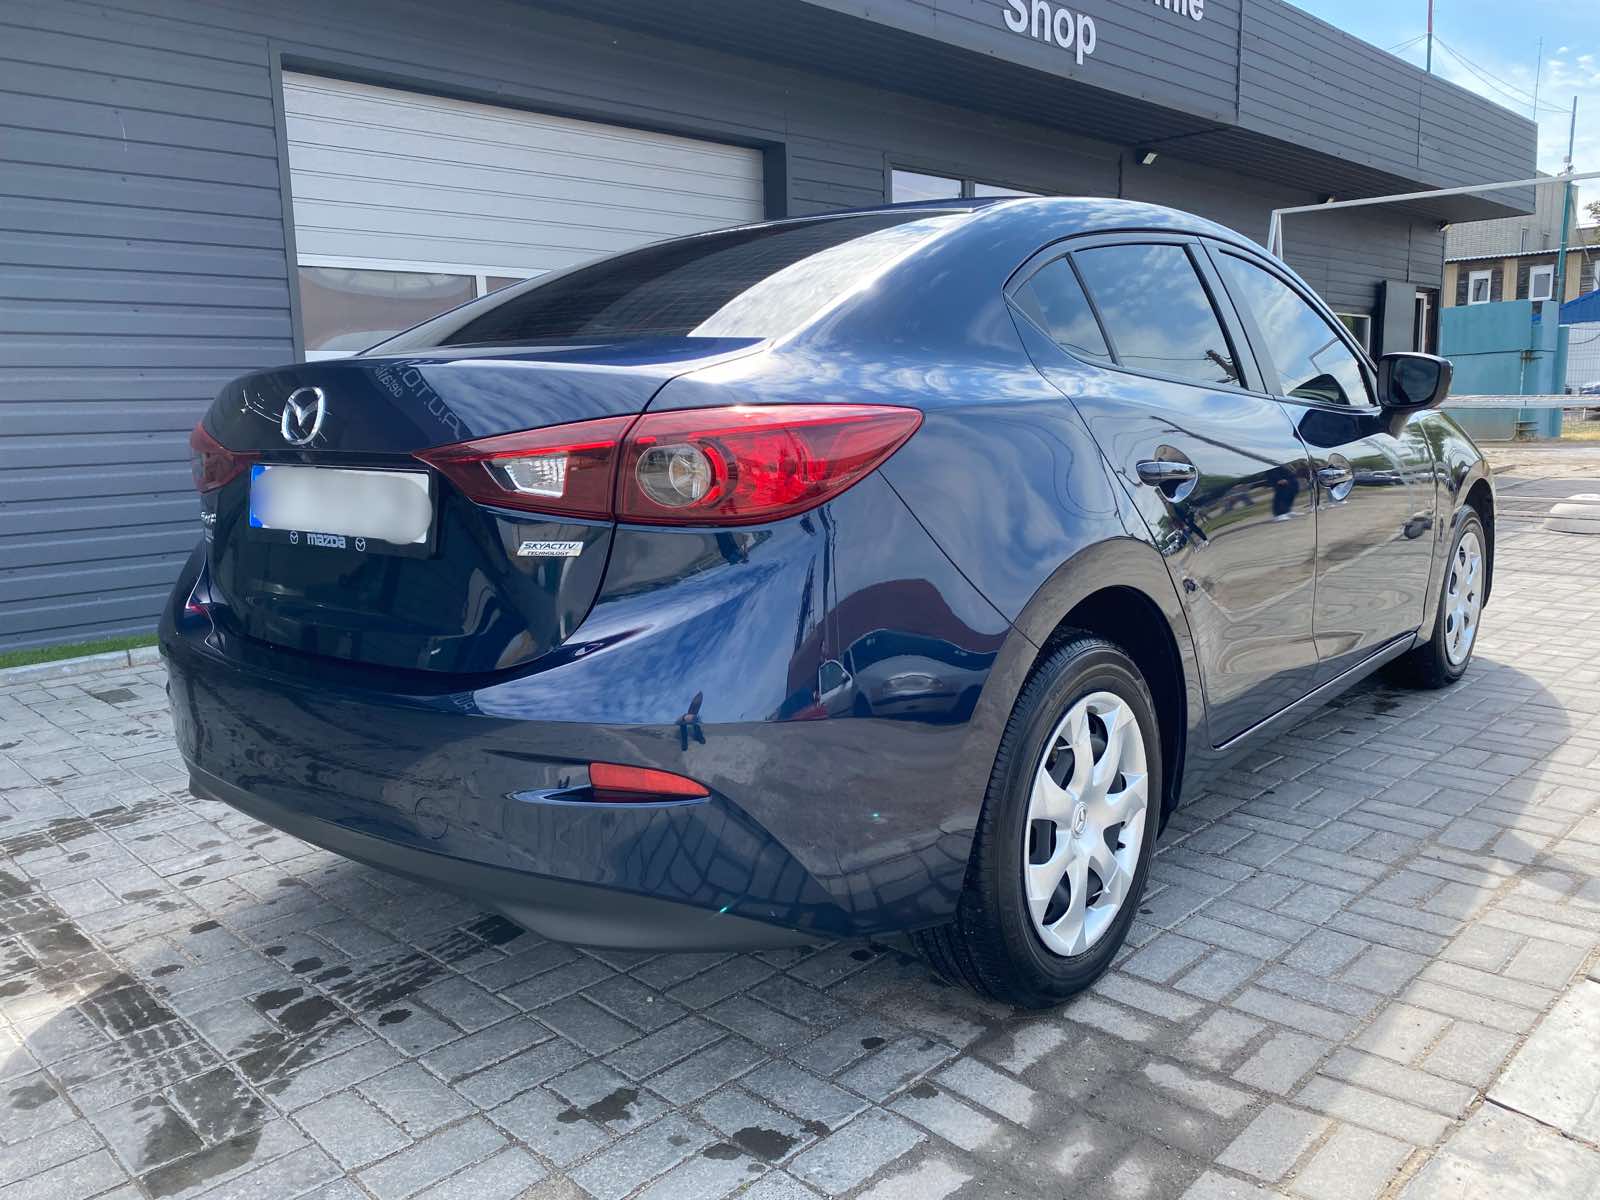 Mazda 3 New 2018